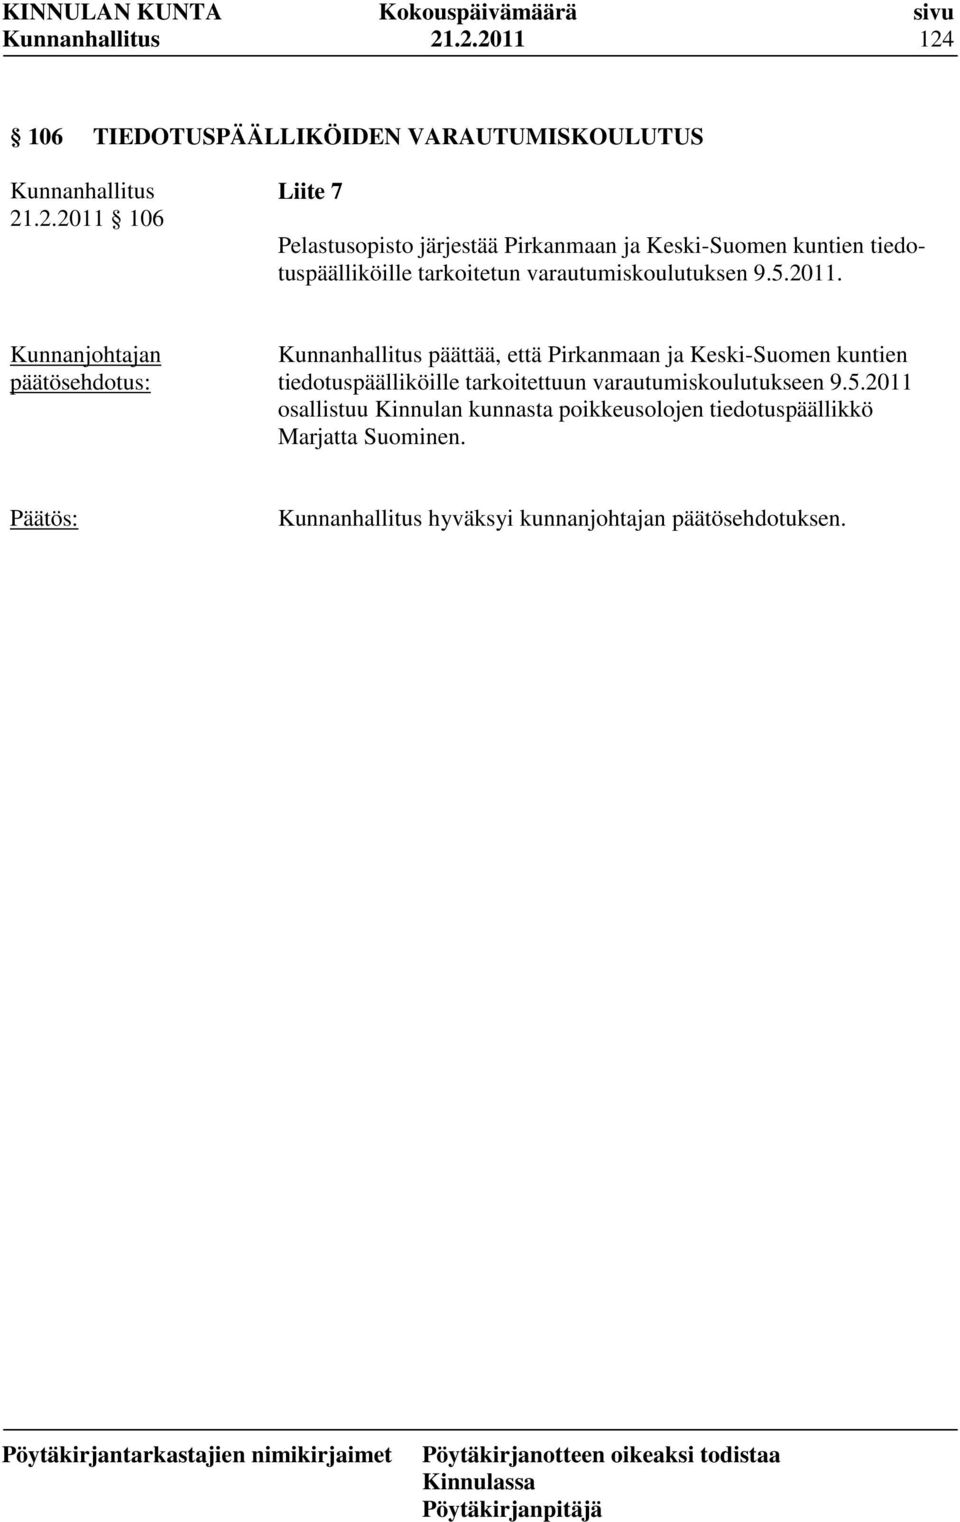 päättää, että Pirkanmaan ja Keski-Suomen kuntien tiedotuspäälliköille tarkoitettuun varautumiskoulutukseen 9.5.